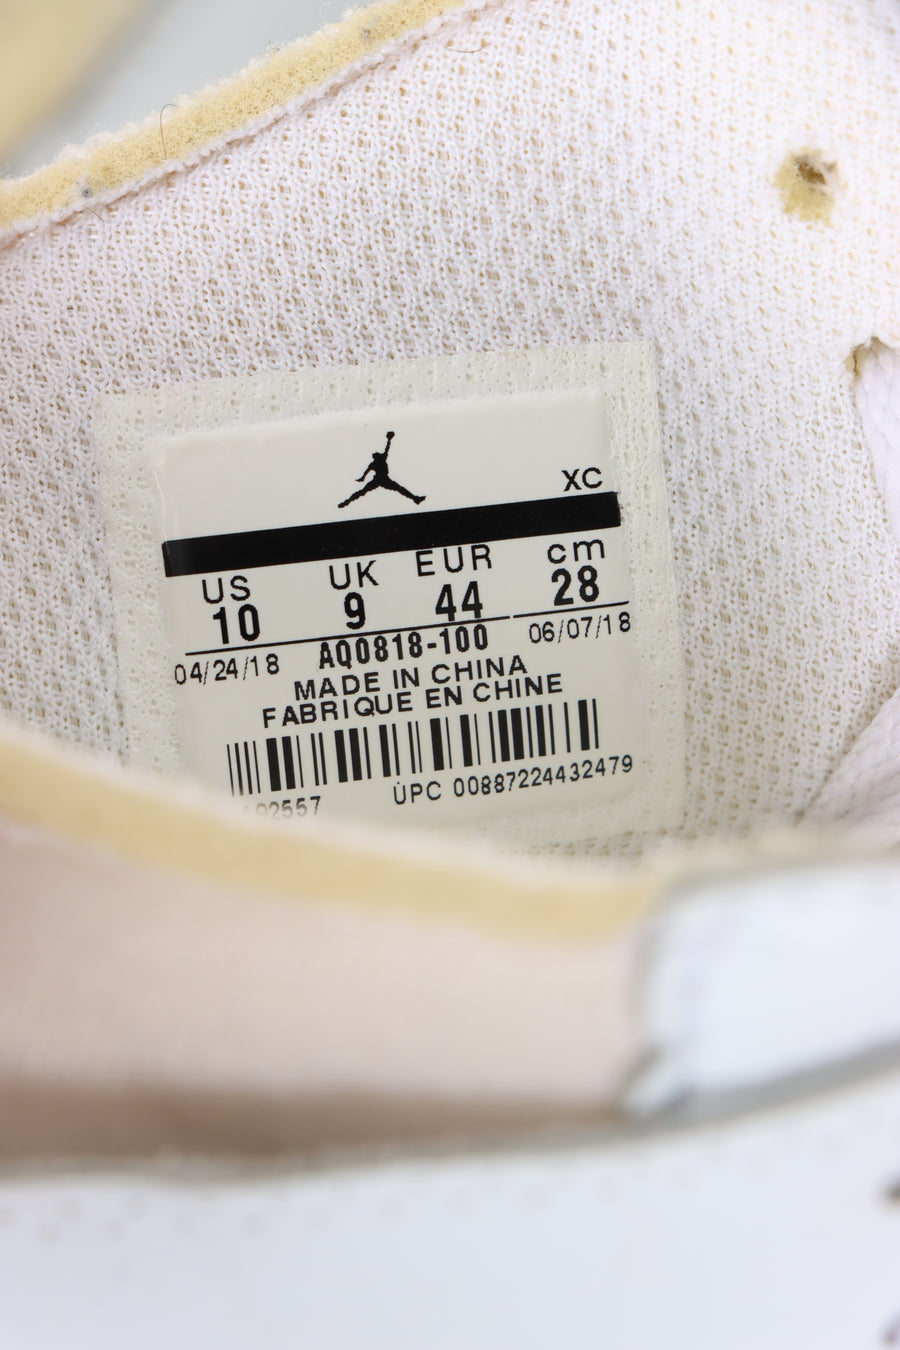 REPLICA Nike Air Jordan 1 Off White Retro High Sneakers (10)